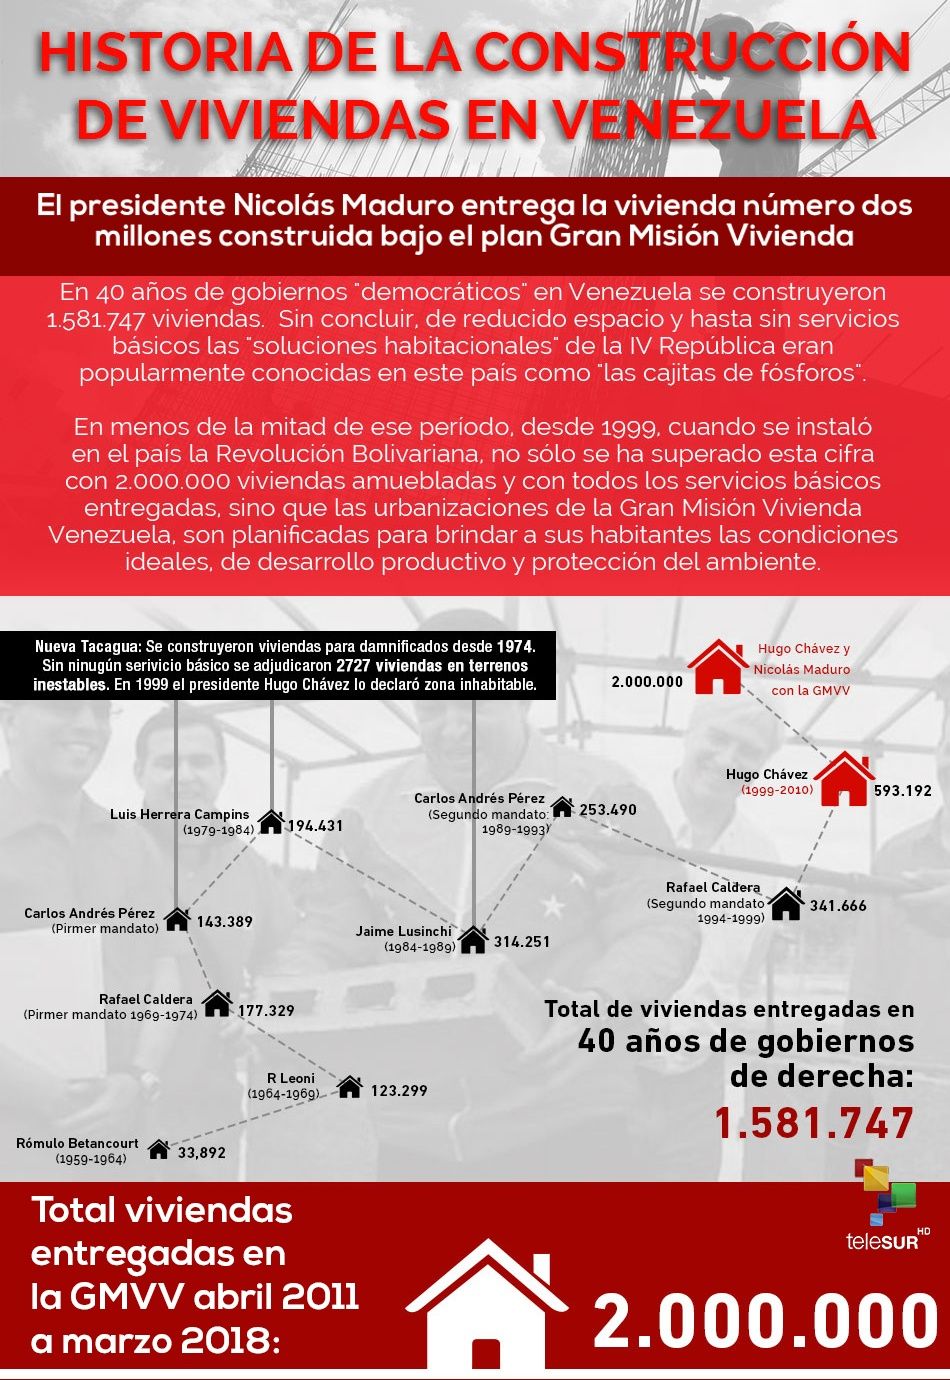 ¿Cómo es la historia de construcción de viviendas en Venezuela?